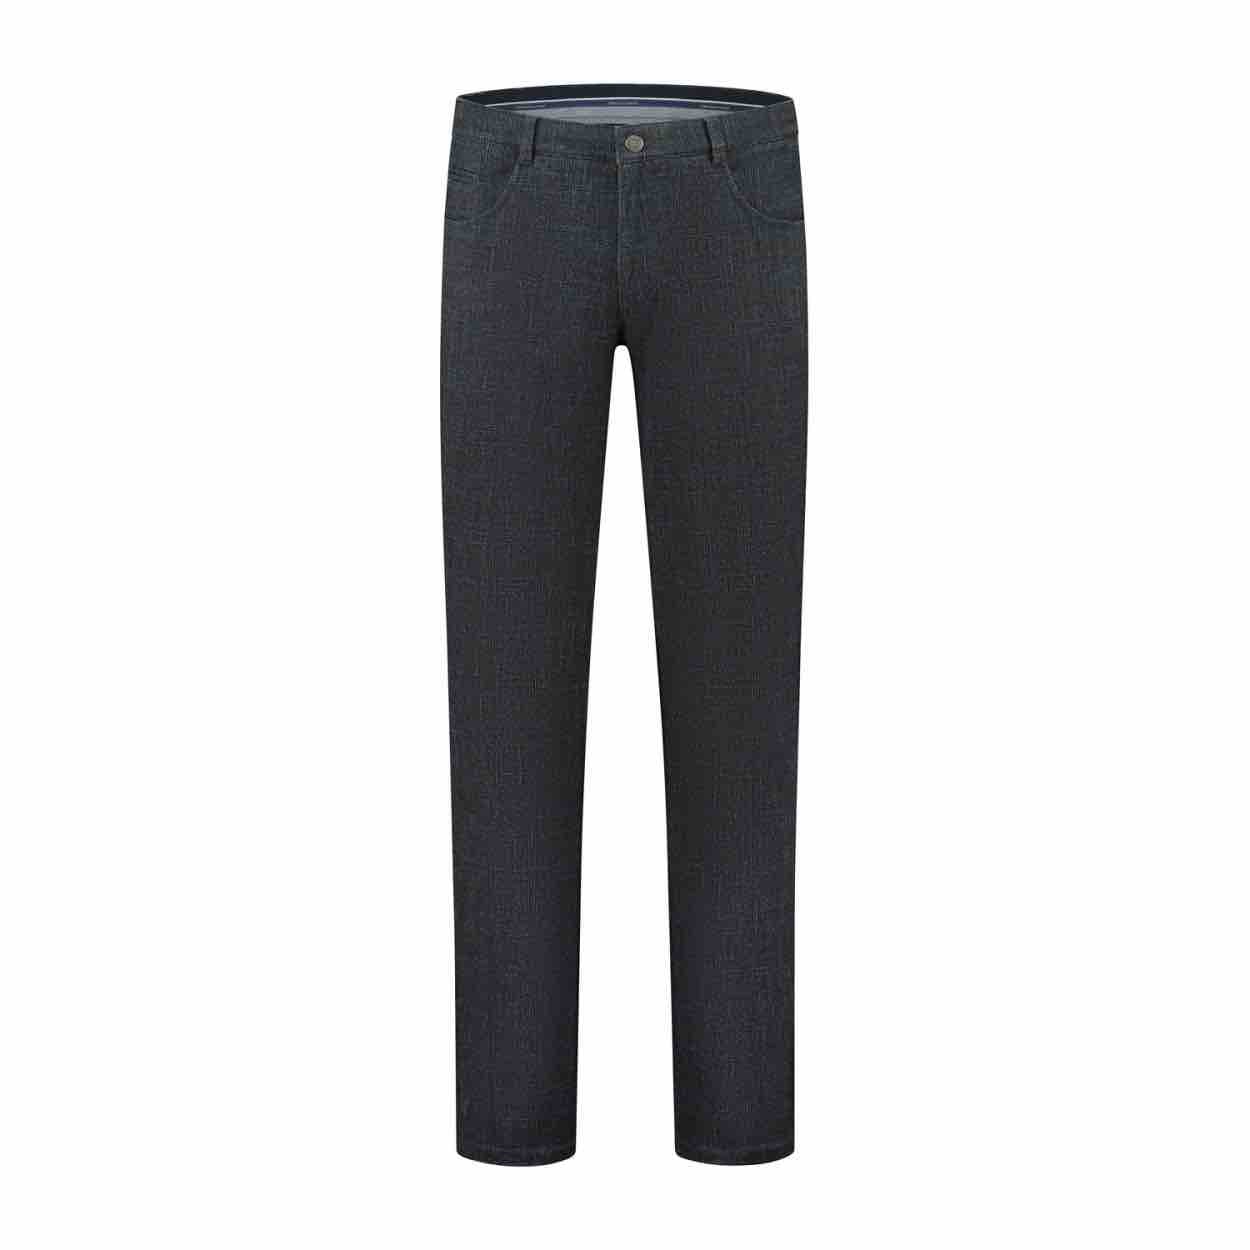 Geklede katoenen broeken van het merk Com4. Deze broeken zijn stretch broeken met elastische band. Een perfecte pasvorm en een heerlijk draagcomfort.